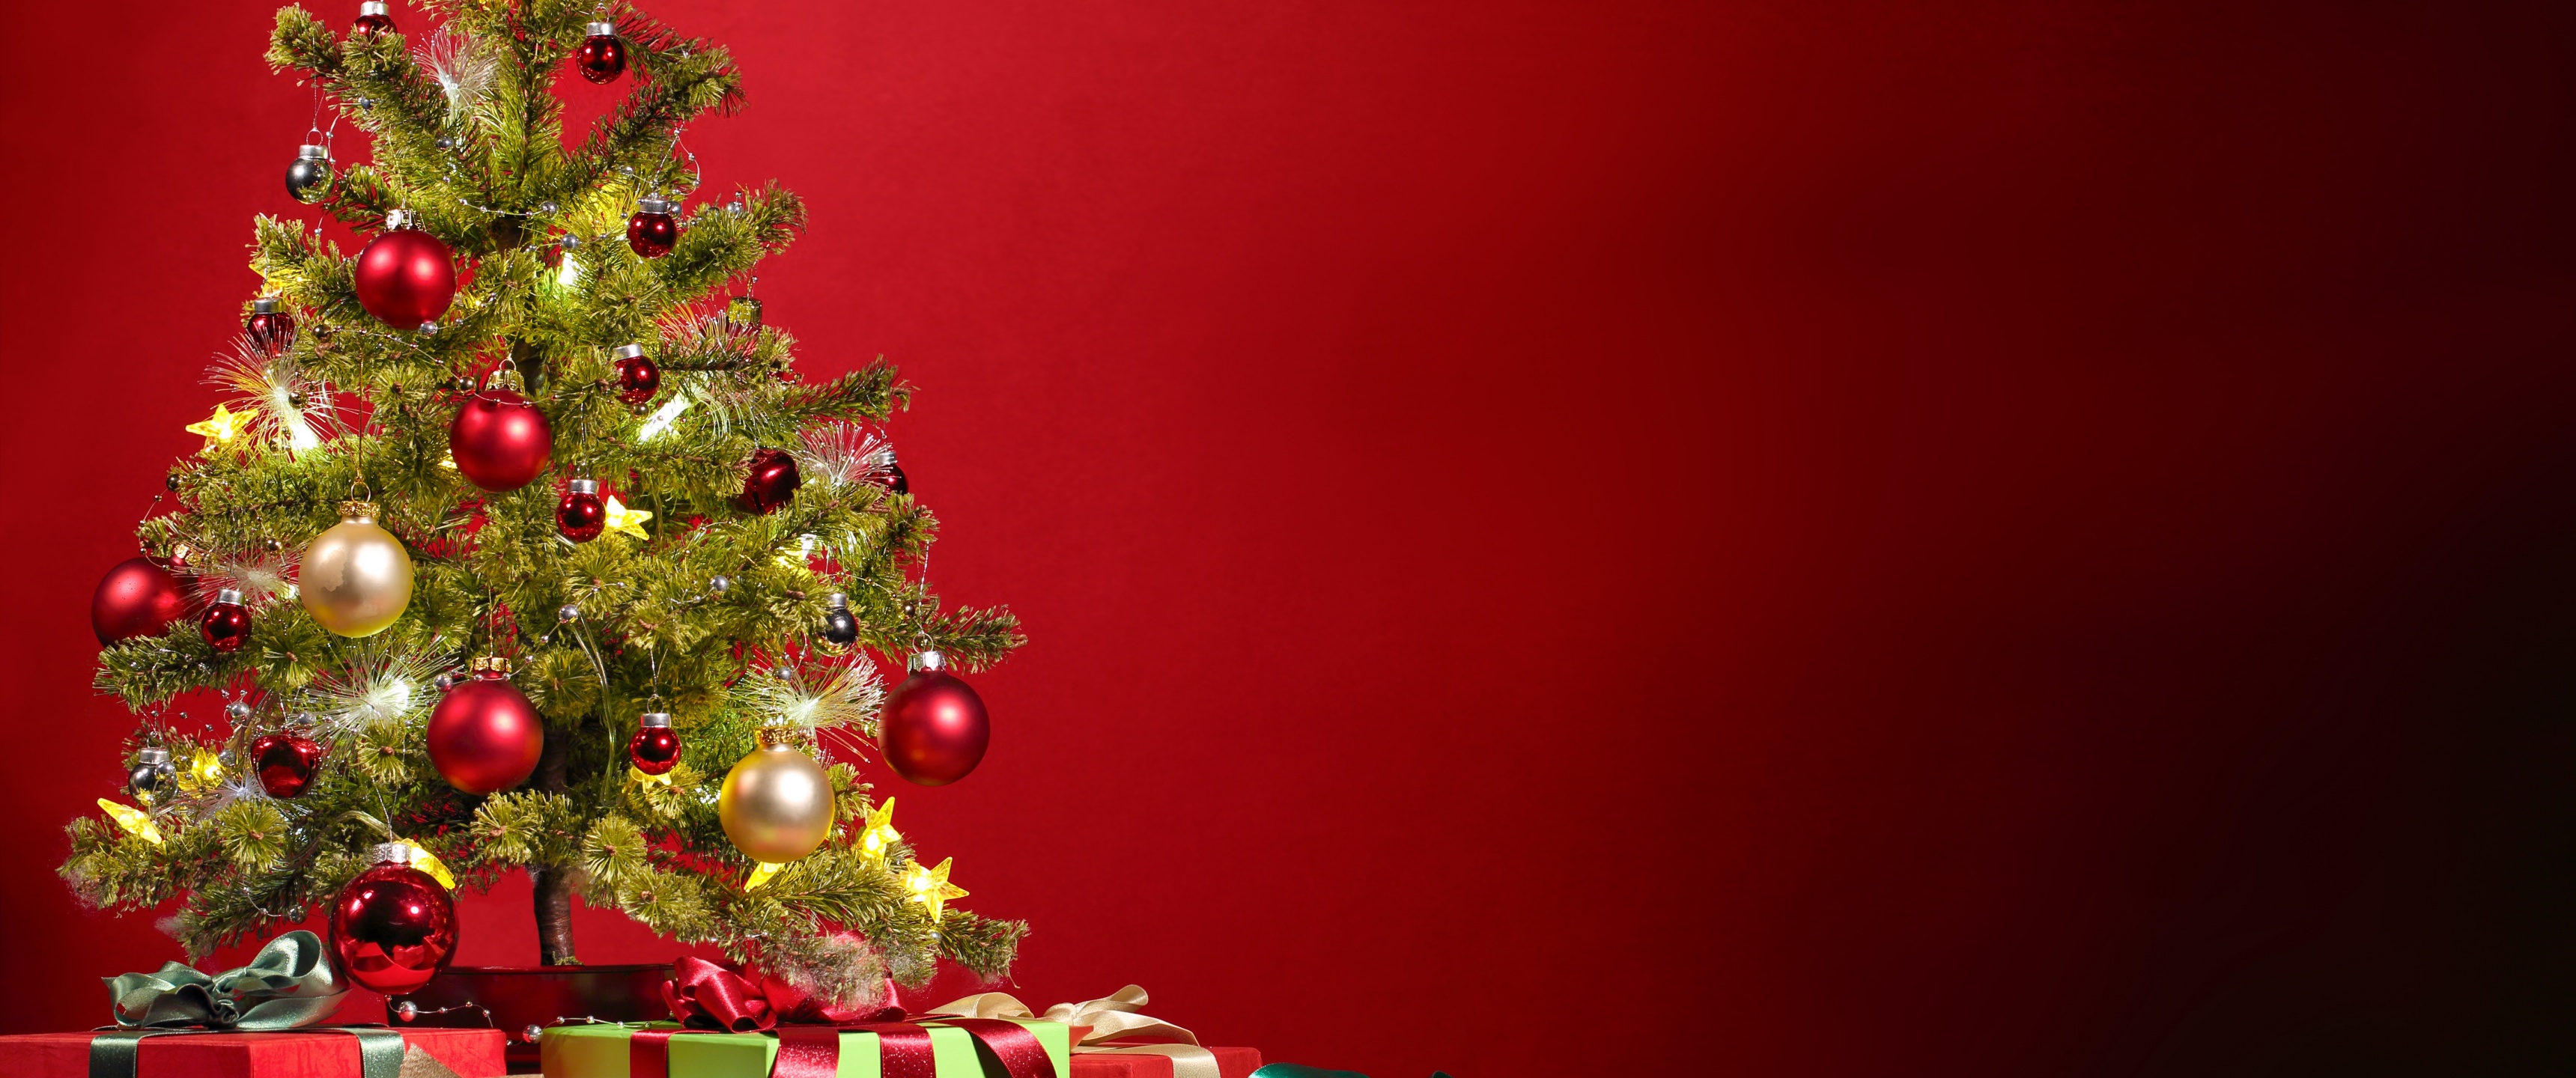 Sẵn sàng cho Tết nguyên đán? Bức ảnh nền desktop 4K về cây Giáng sinh và trang trí đón Tết tại đây để giúp bạn chuẩn bị tốt hơn cho những ngày Tết truyền thống sắp tới! Hình nền lung linh và đầy màu sắc này sẽ giúp cho không gian của bạn trở nên ấm áp và đầy niềm vui của mùa Giáng sinh.